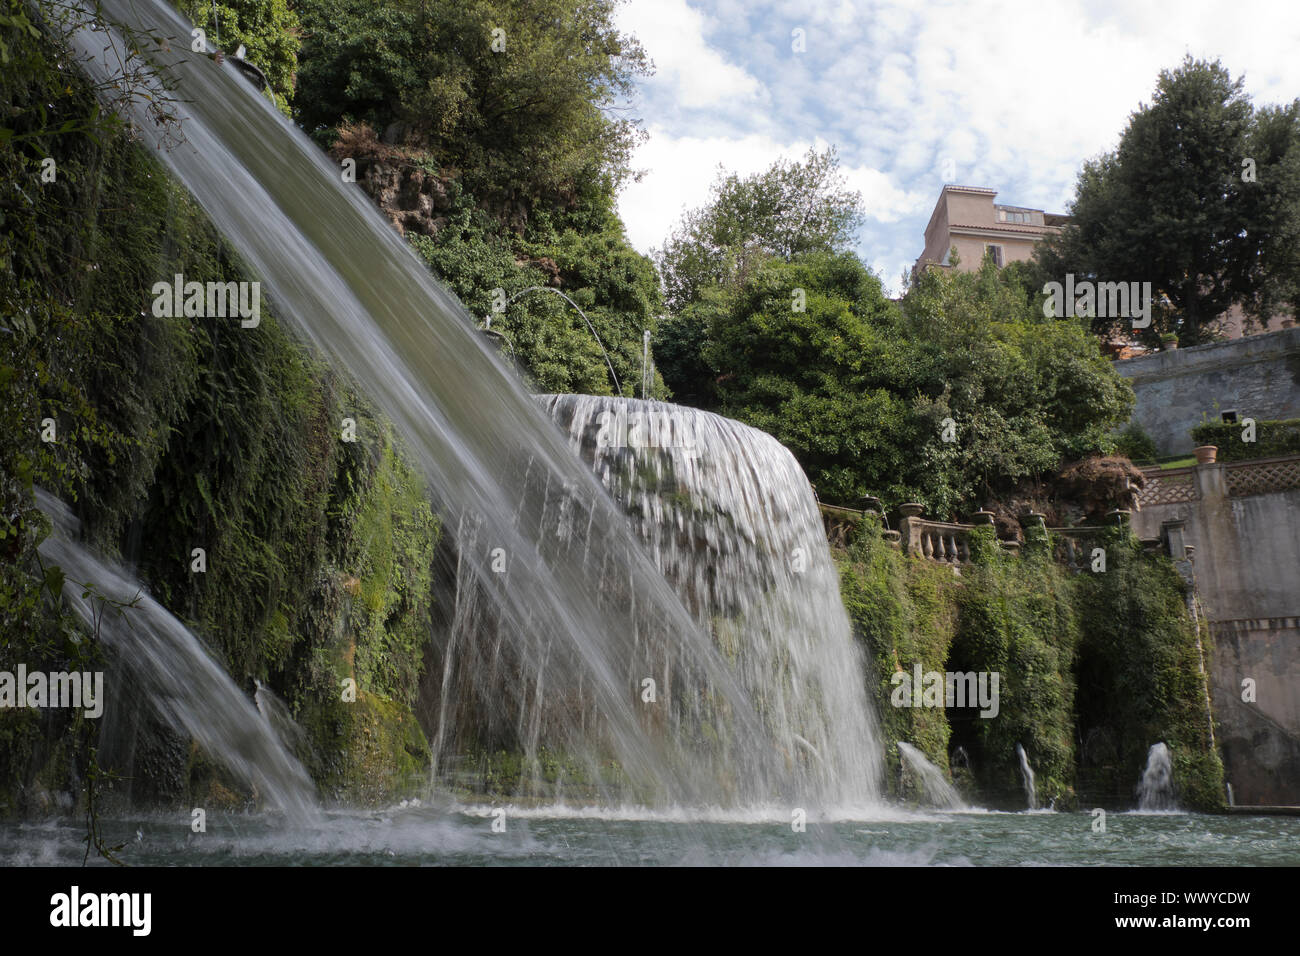 Fontana del ovato nella città di Tivoli in Italia Foto Stock